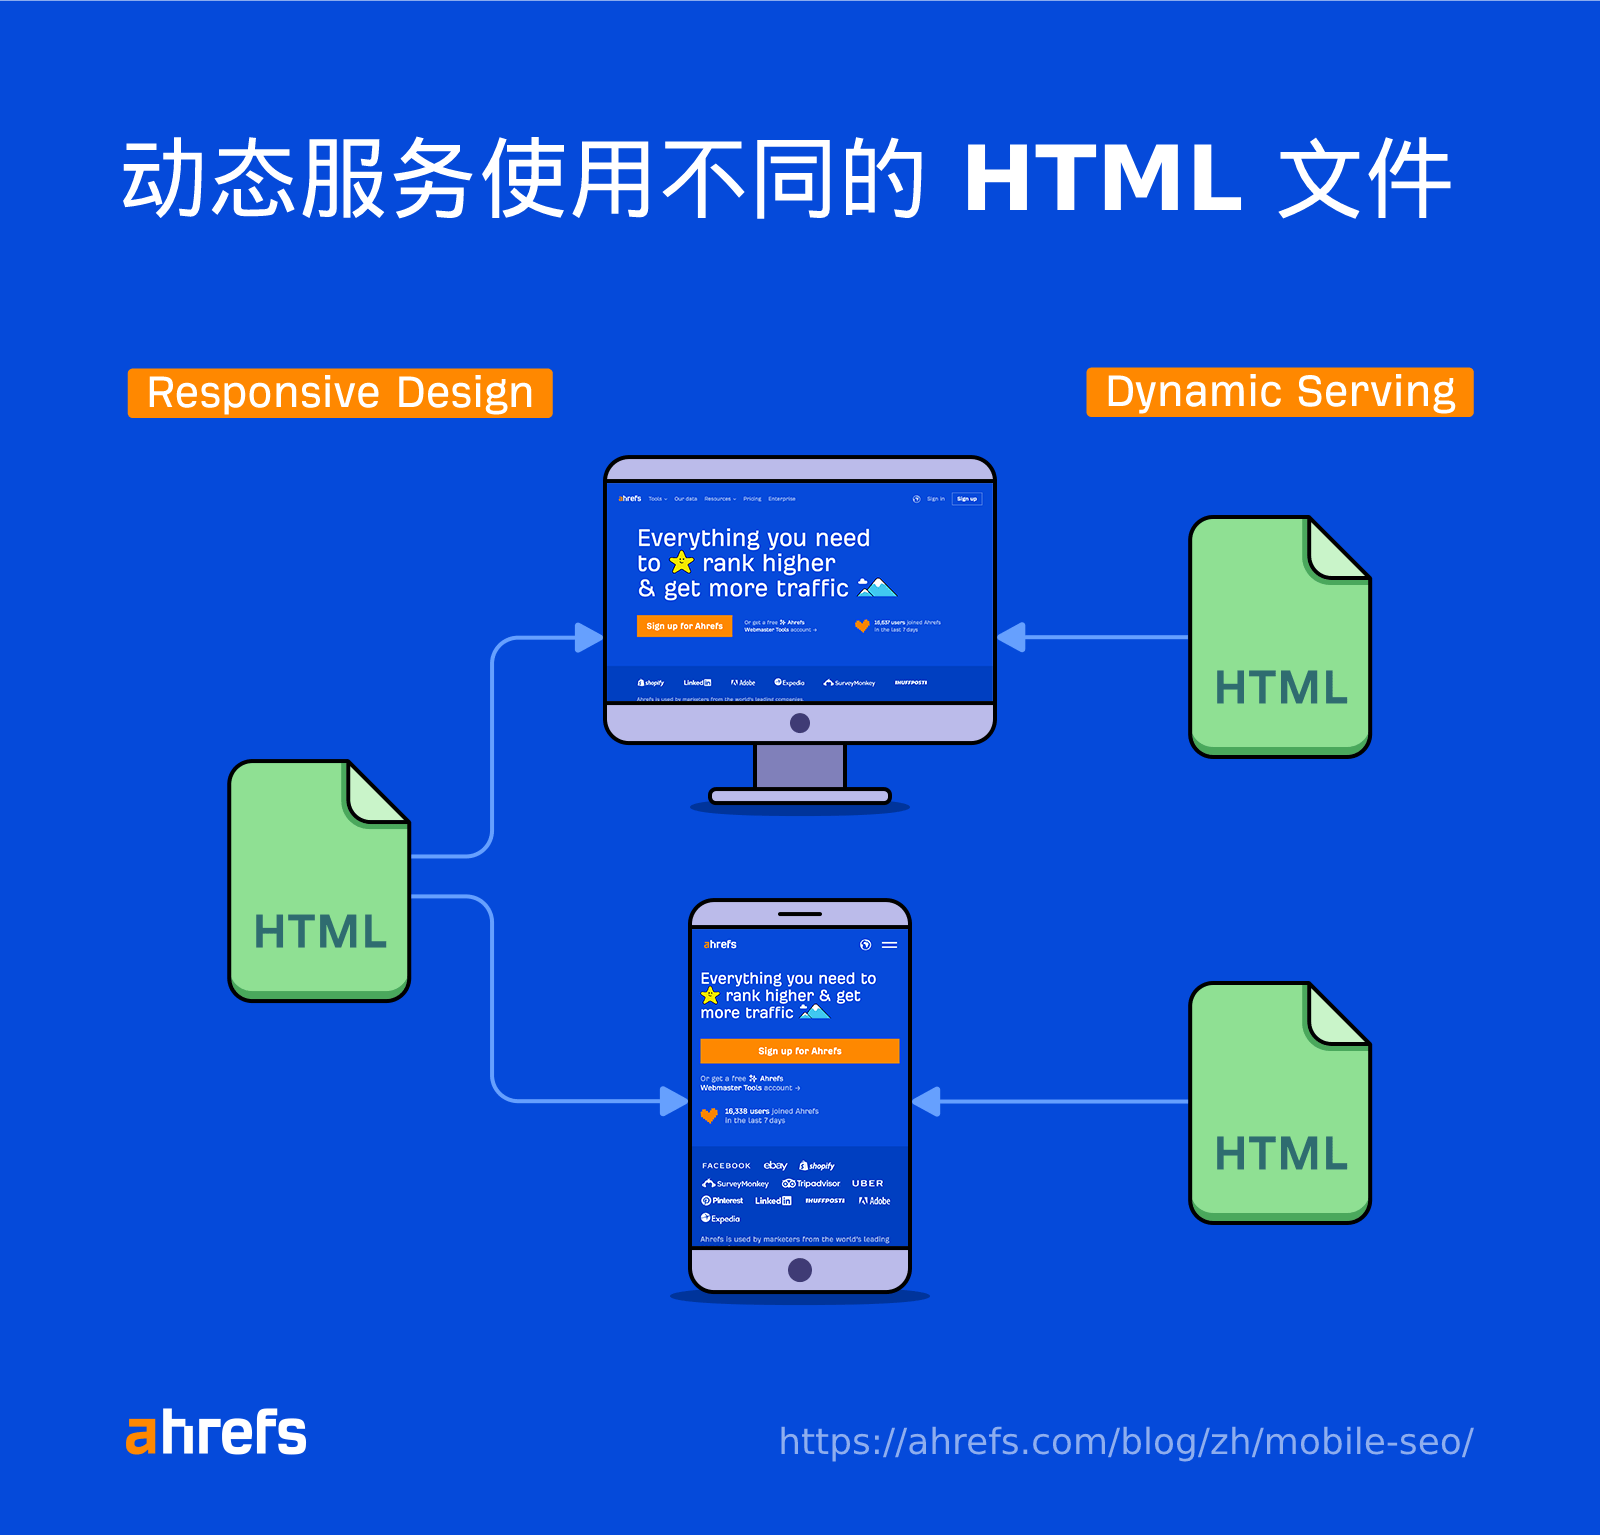 动态服务通过设备提供不同的 HTML 文件。